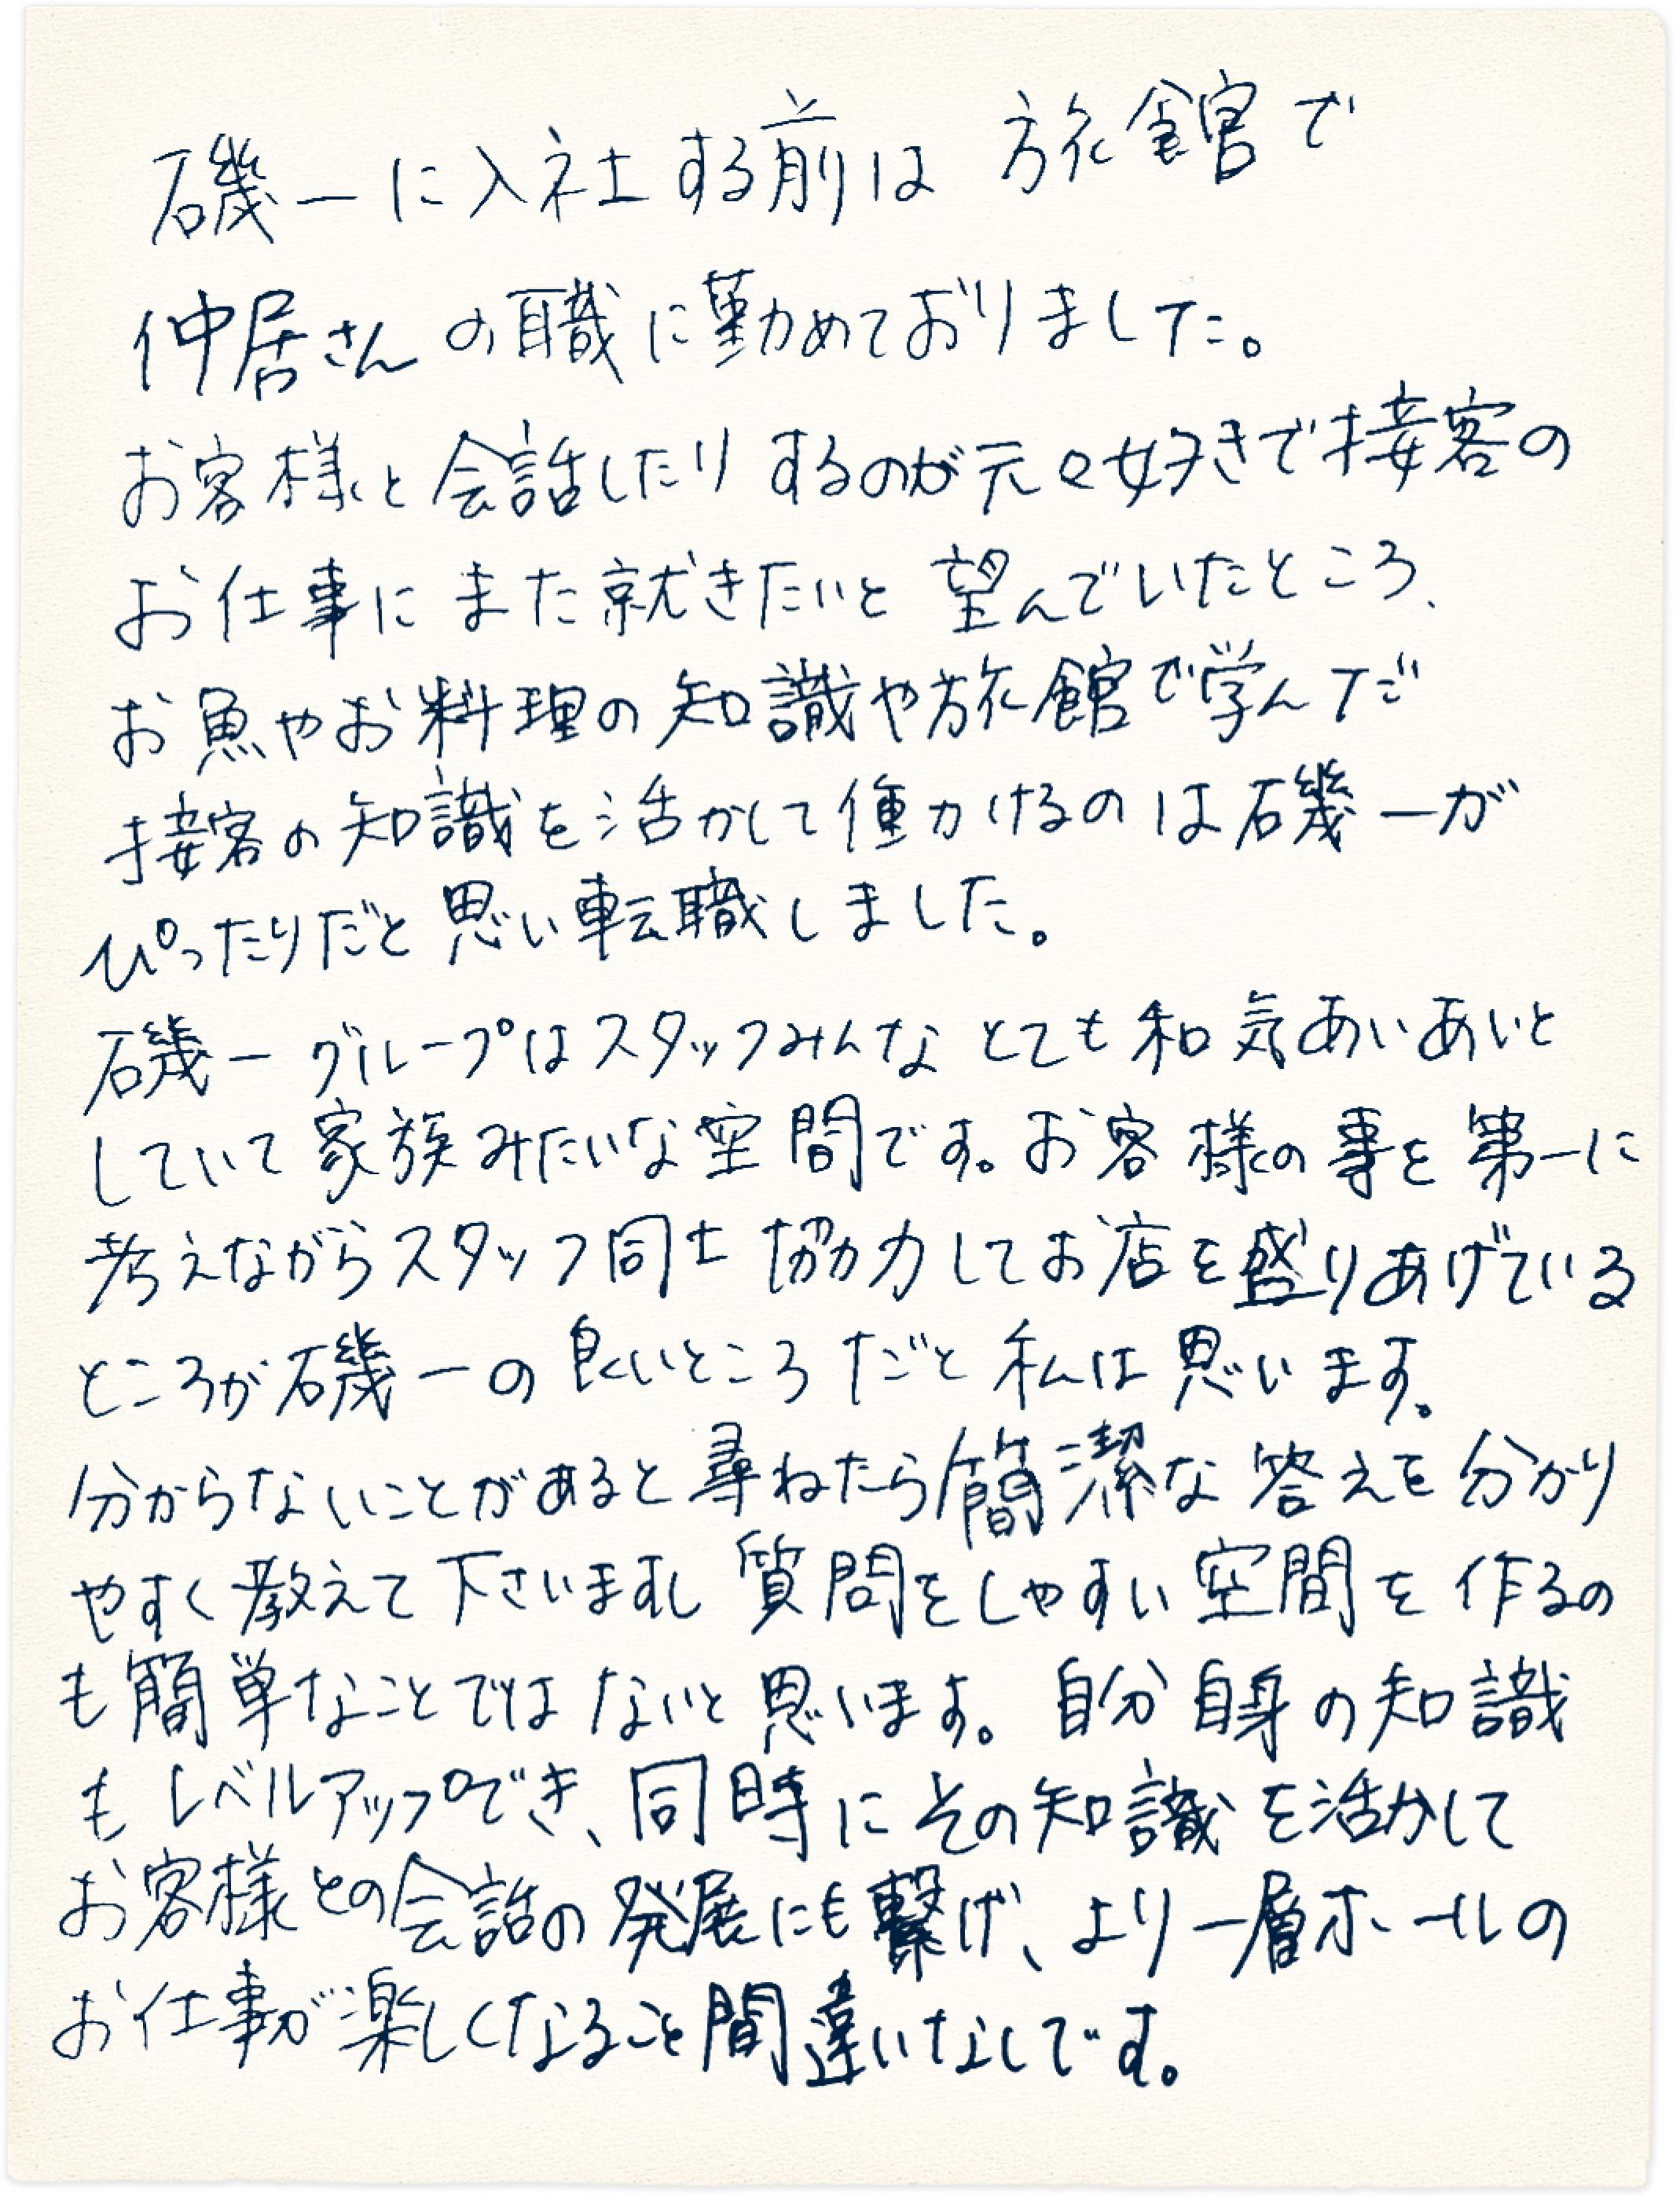 松本さんの手書きメッセージ